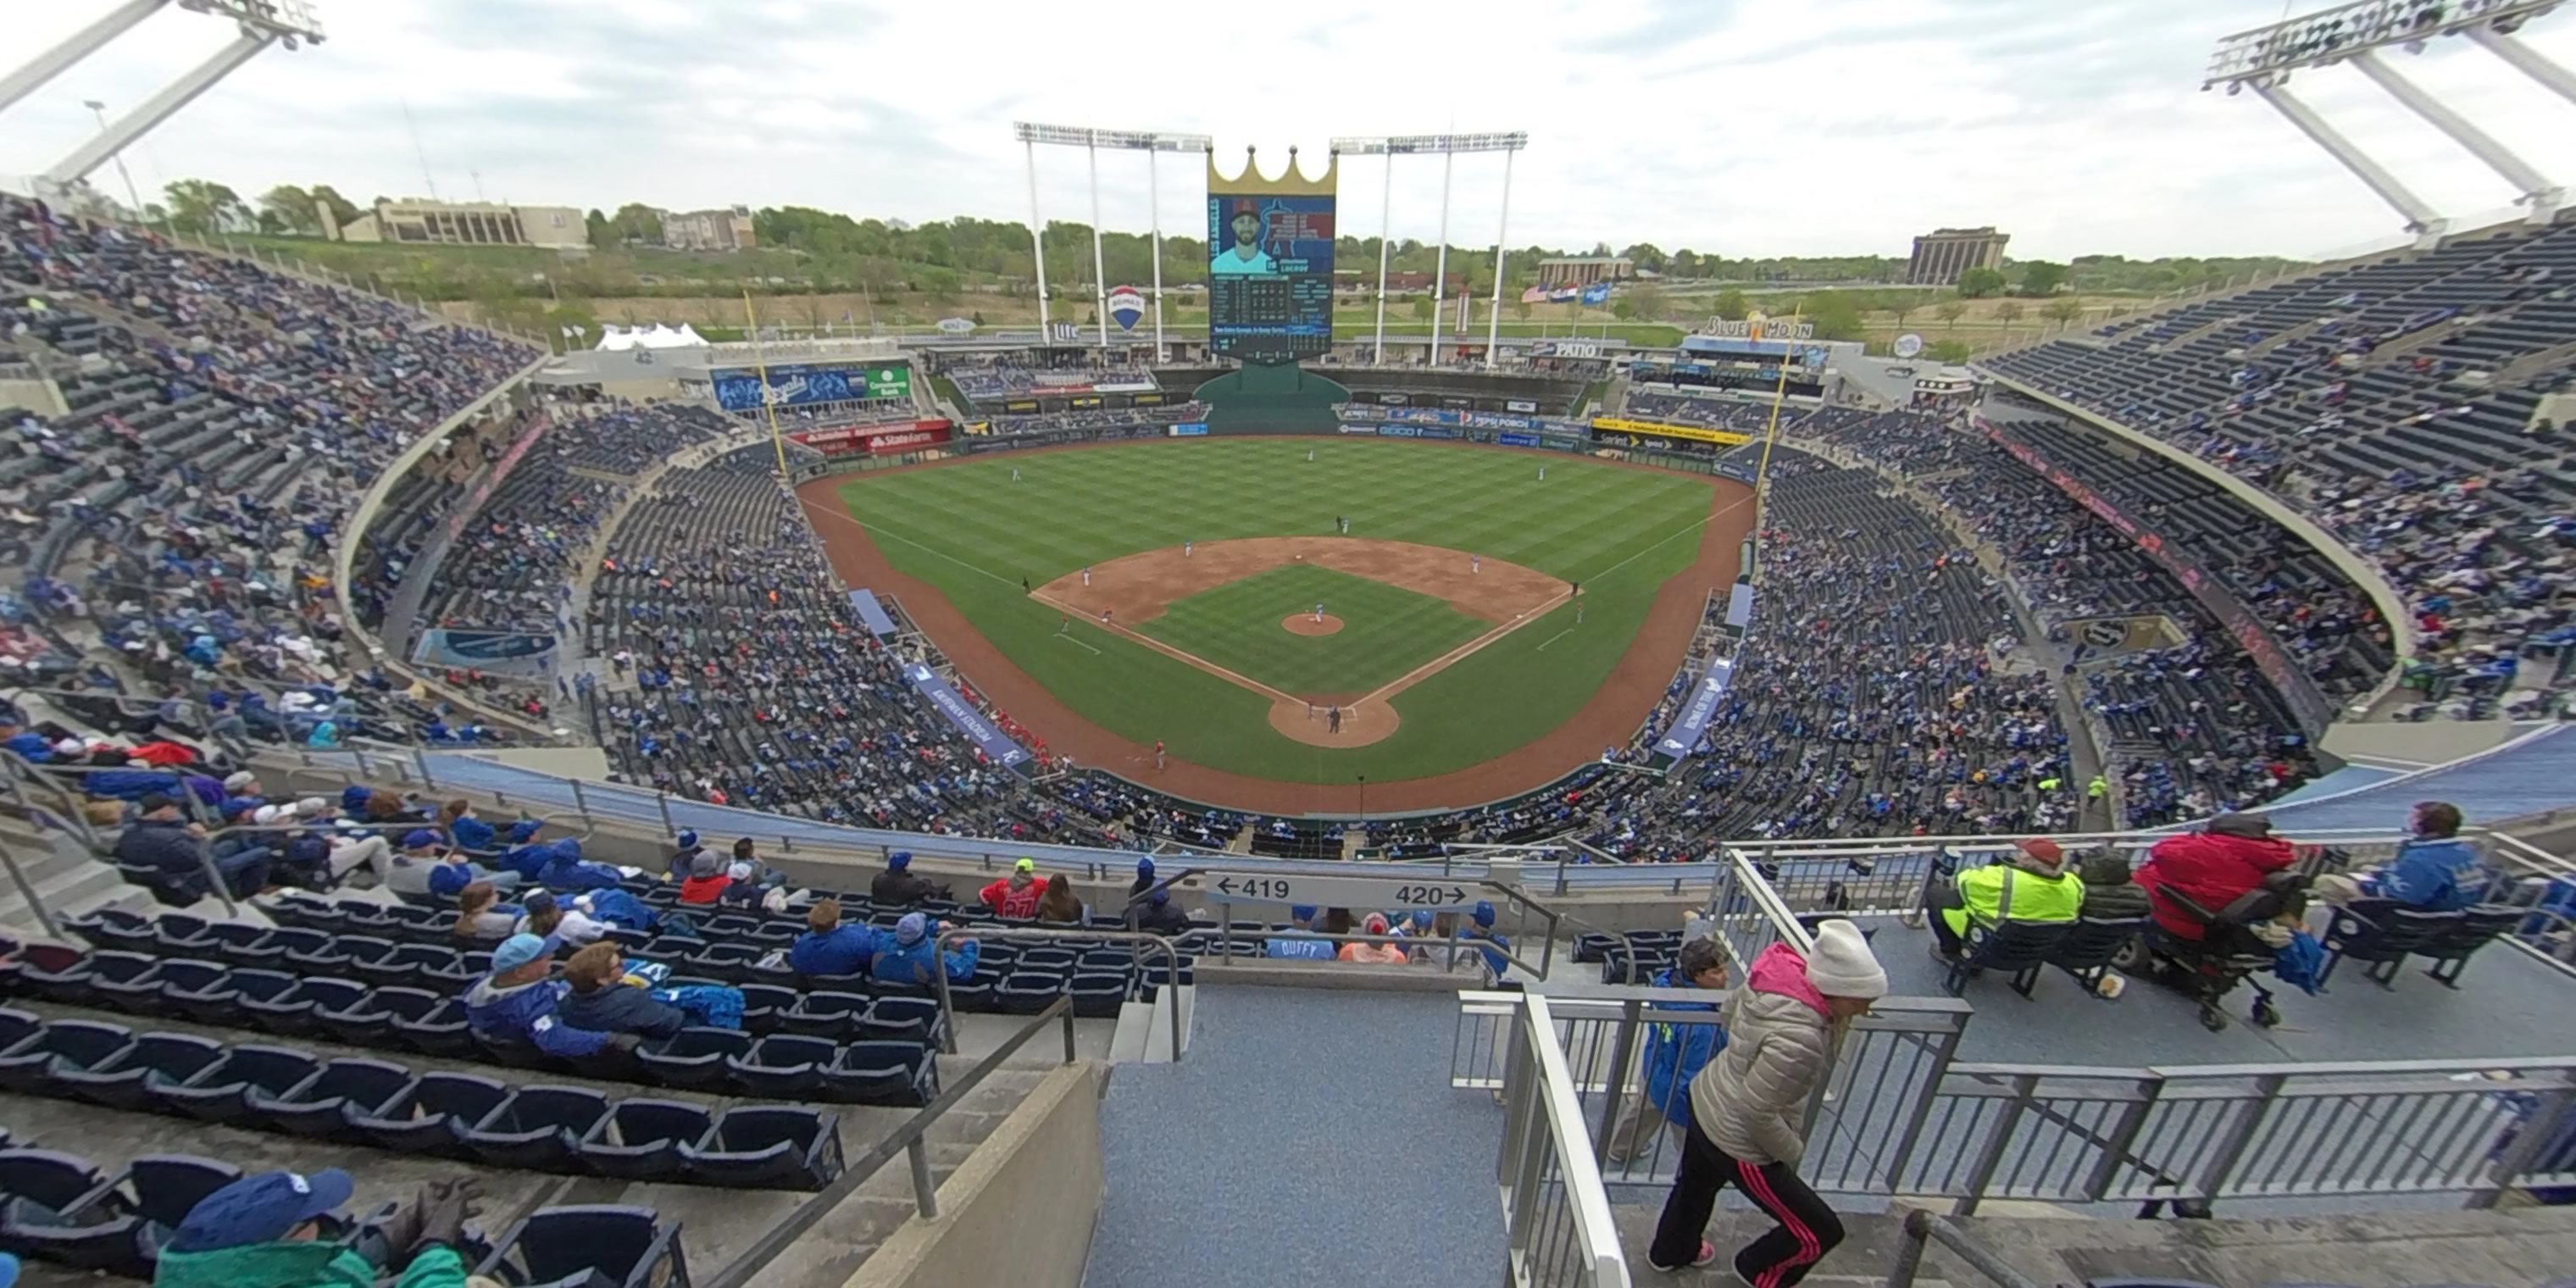 section 419 panoramic seat view  - kauffman stadium